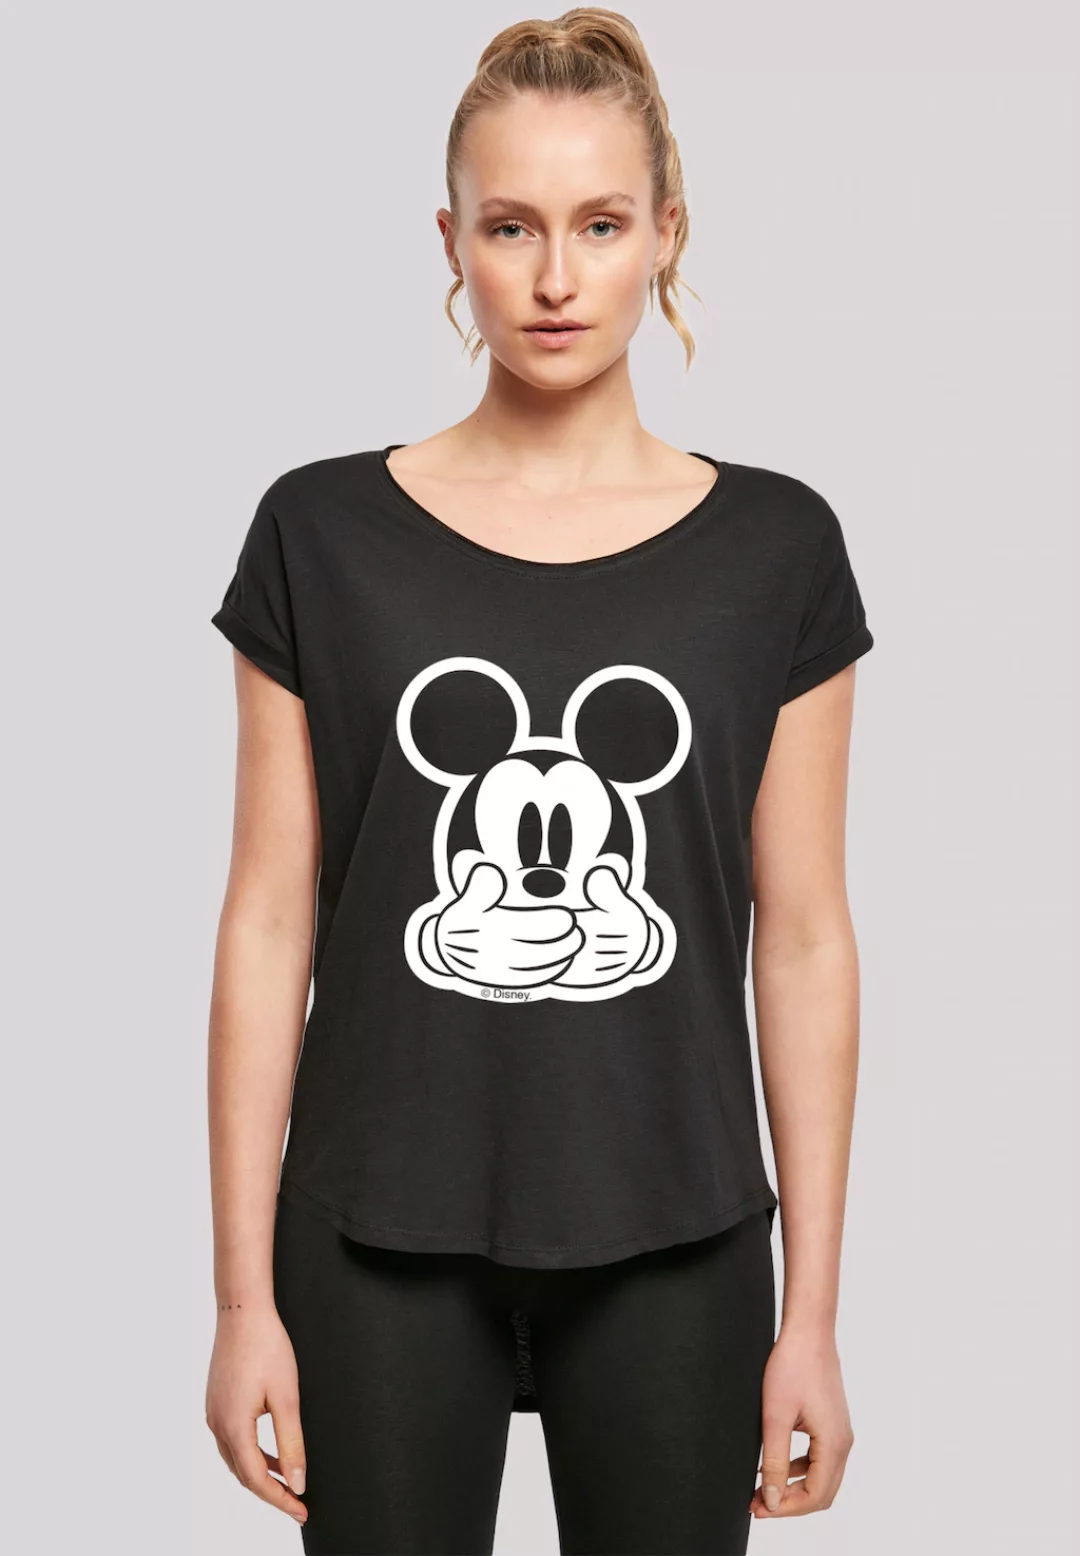 F4NT4STIC T-Shirt "Micky Maus Don’t Speak", Print günstig online kaufen